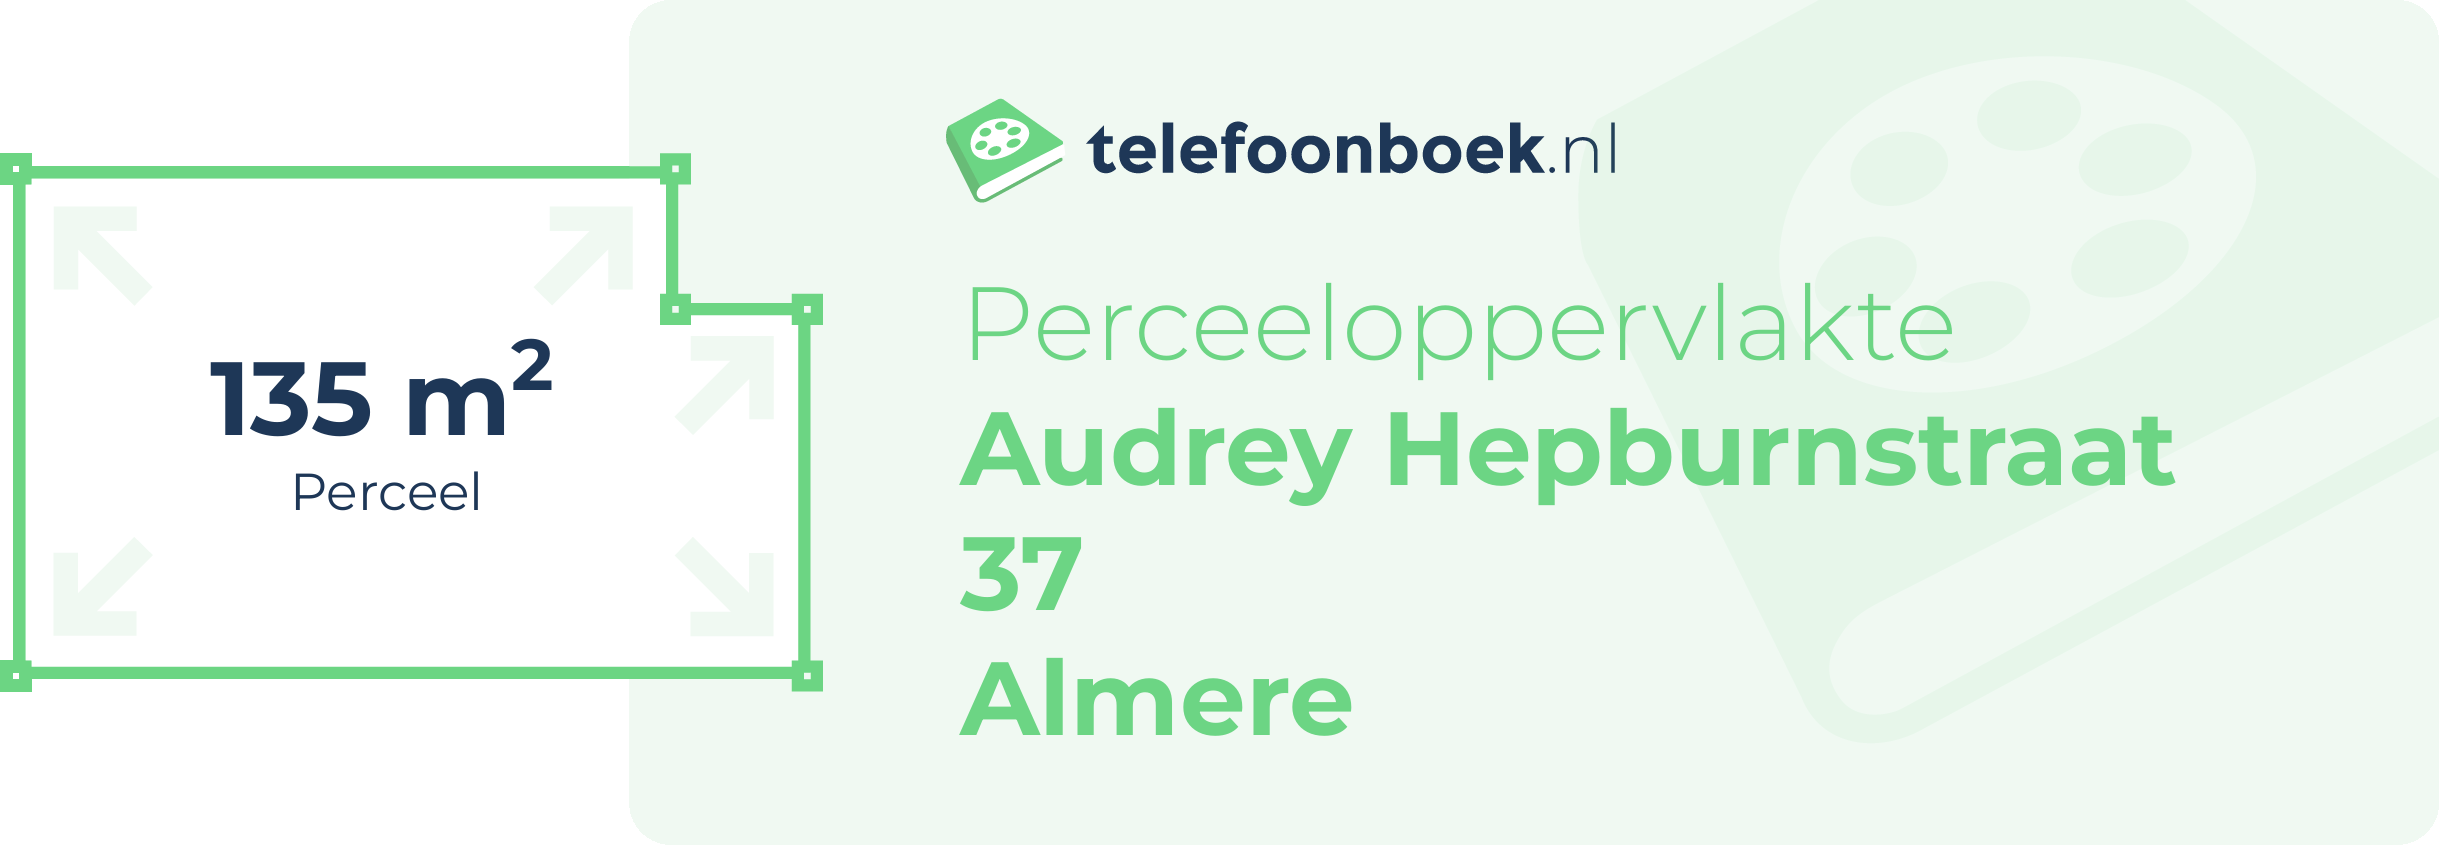 Perceeloppervlakte Audrey Hepburnstraat 37 Almere